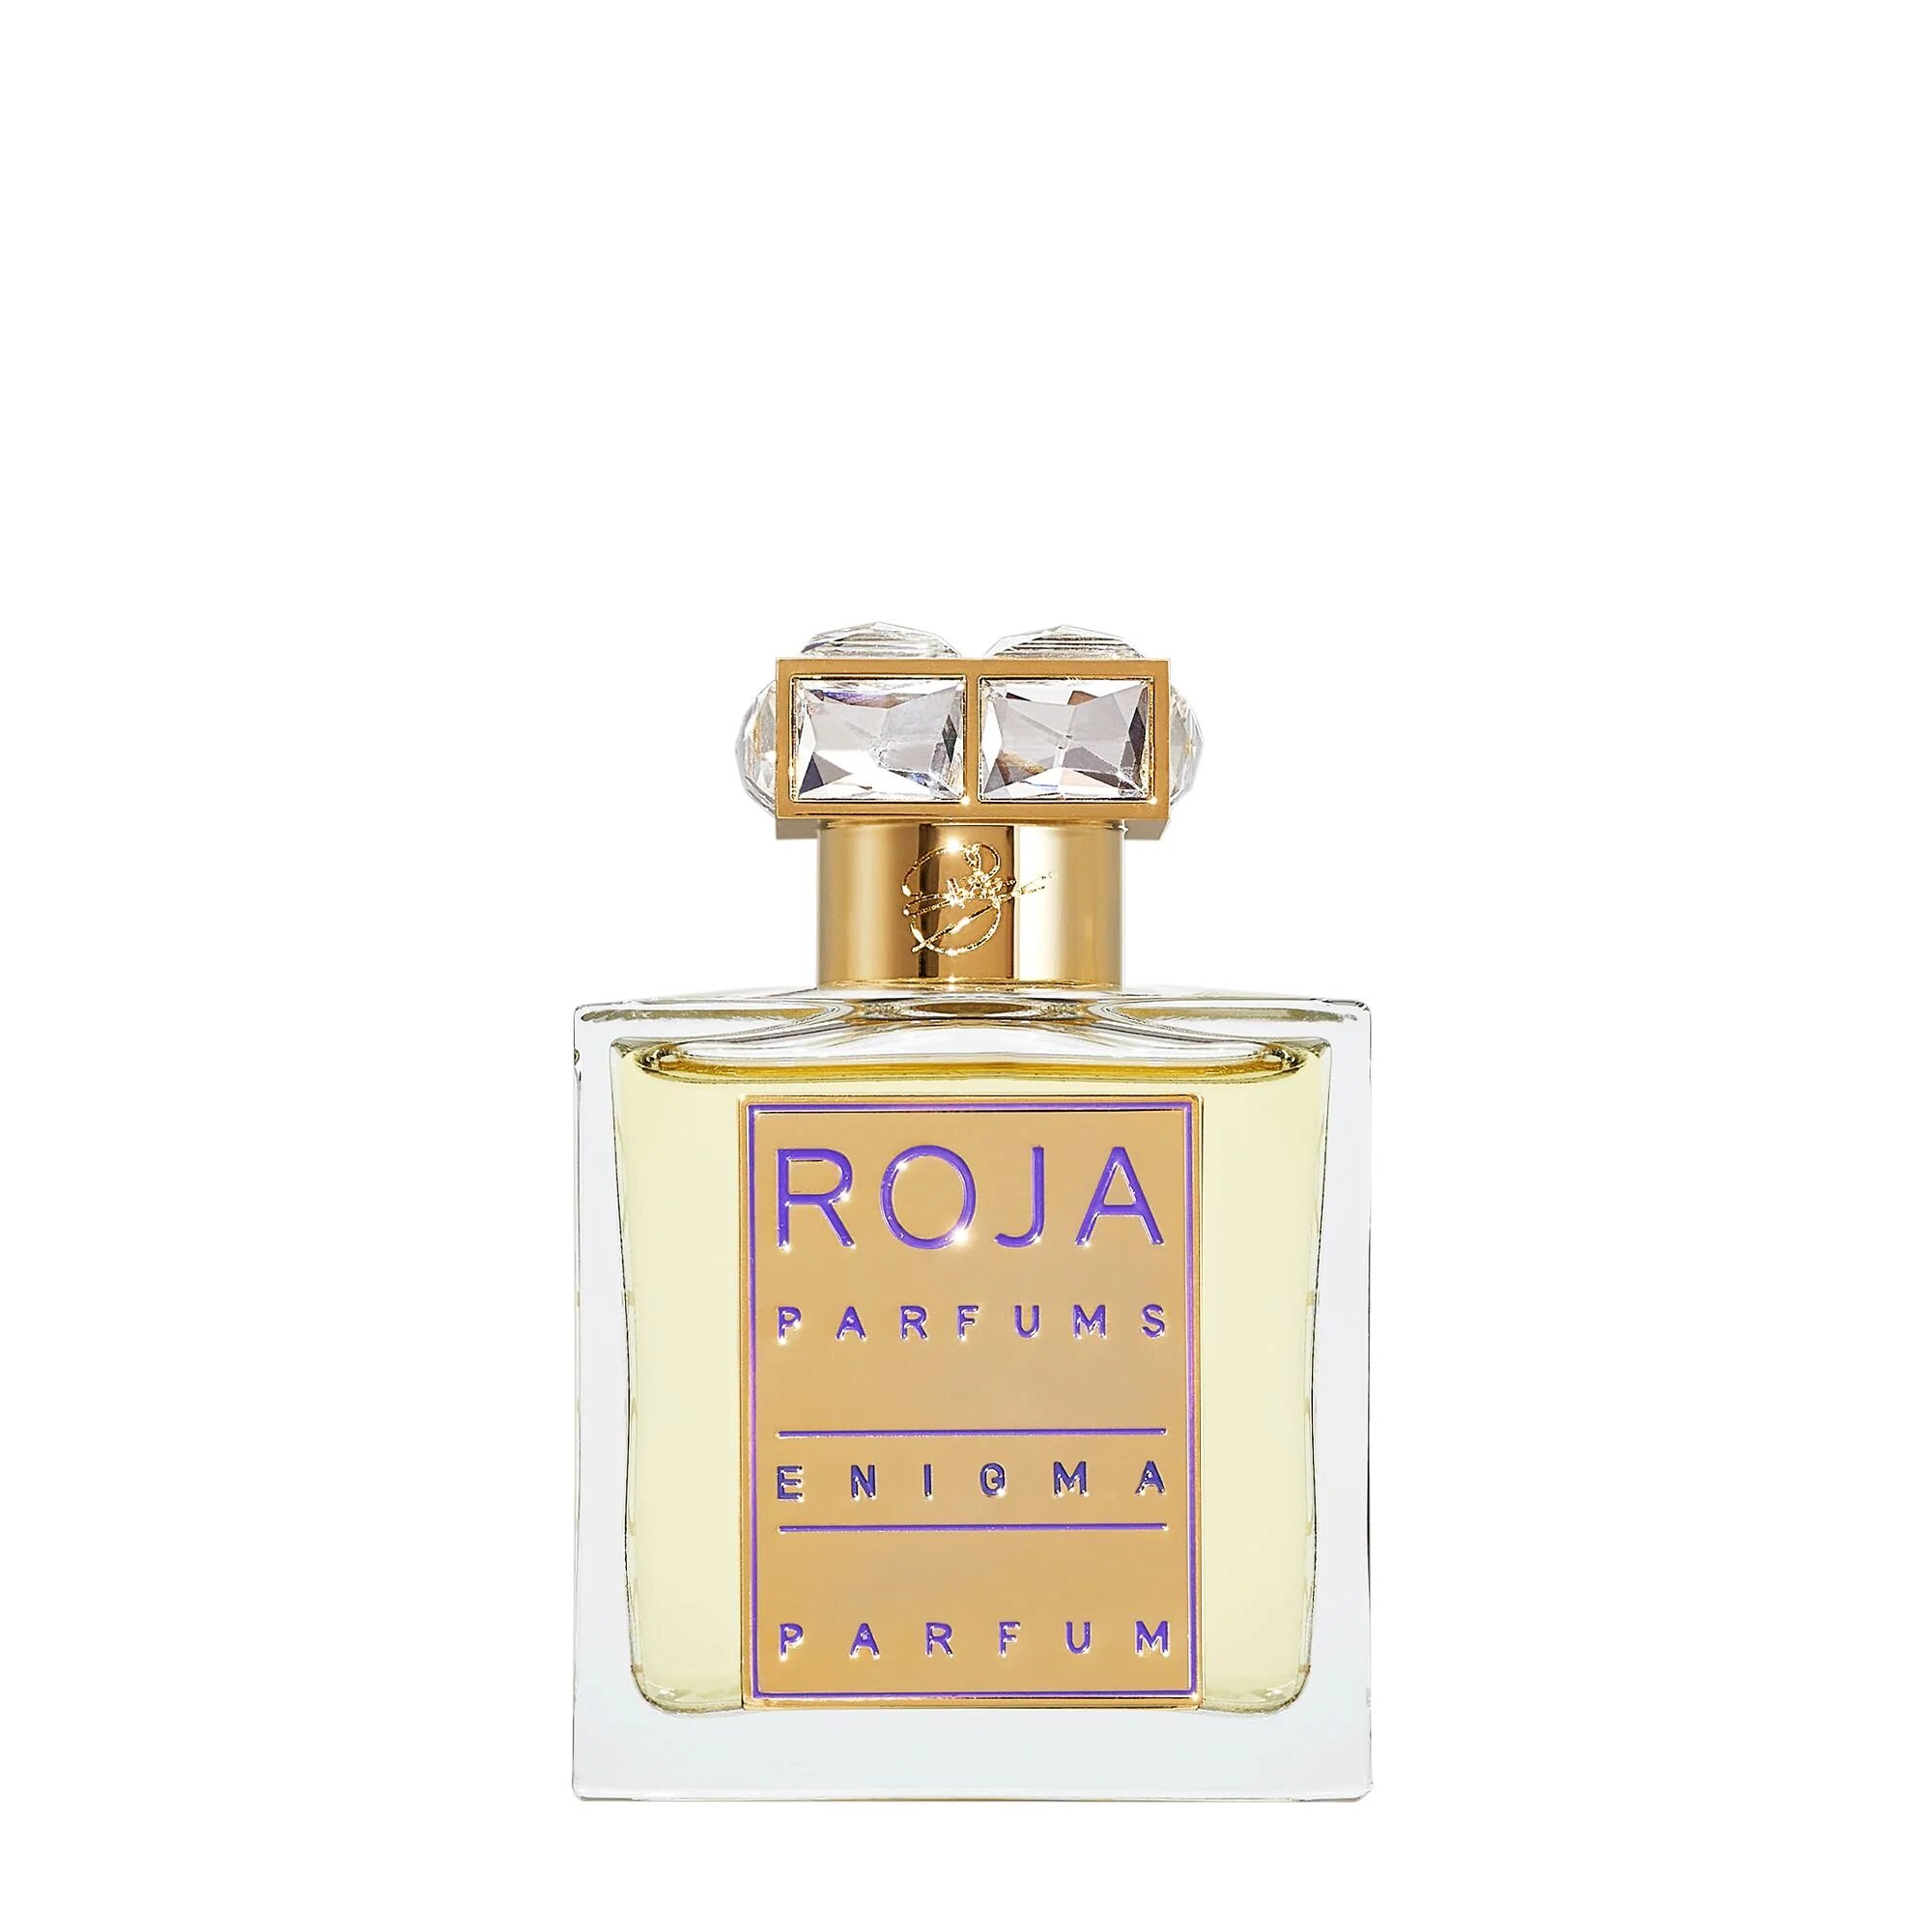 enigma-pour-femme-fragrance-roja-parfums-50ml-467737